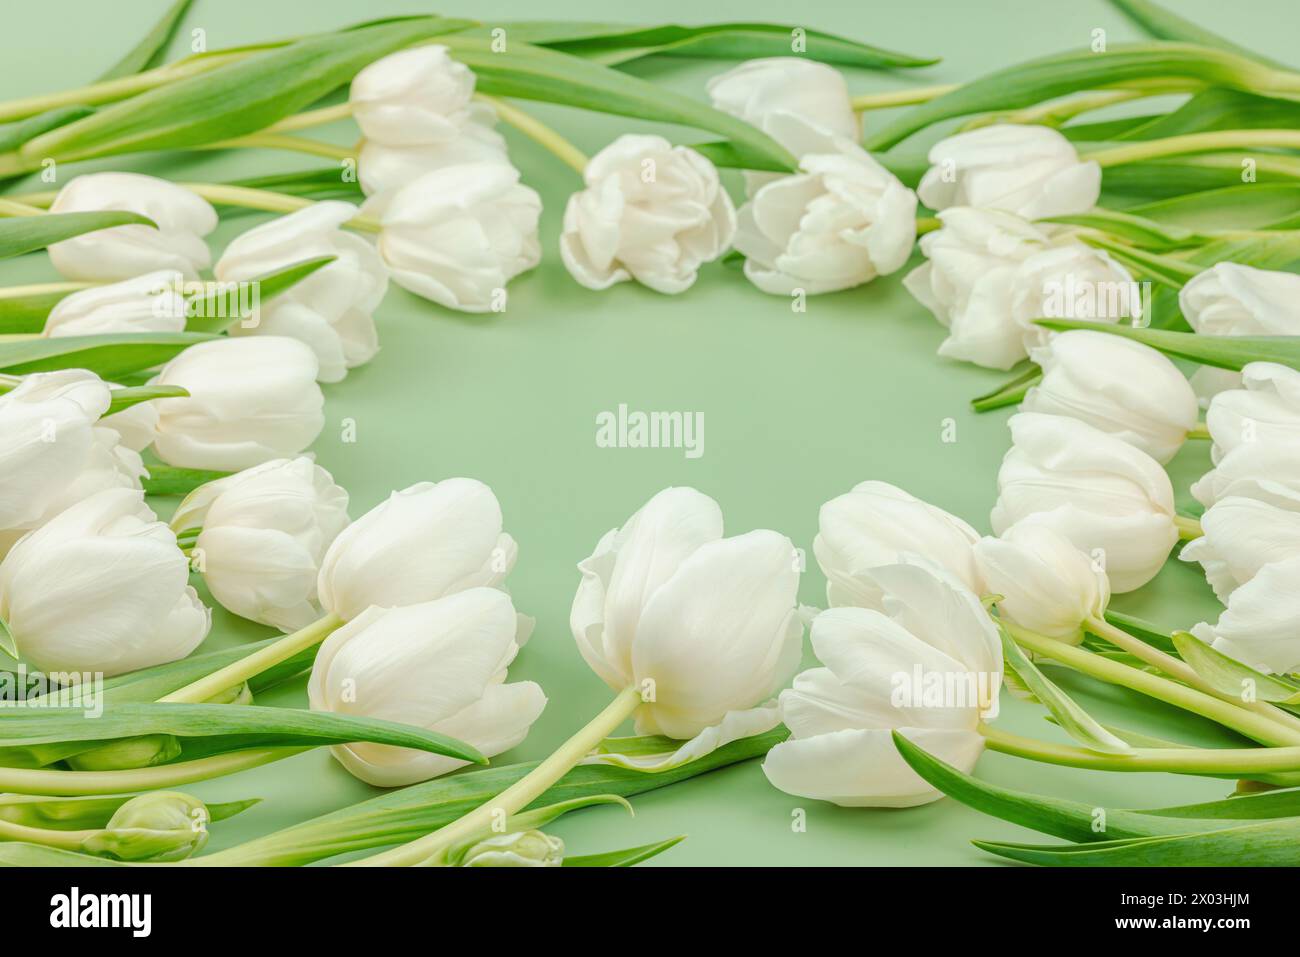 Weiße Tulpen auf pastellgrünem Hintergrund. Blühende Blumen, festliches Konzept für Muttertag oder Valentinstag. Grußkarte, Osterflachgelegt, am besten Stockfoto